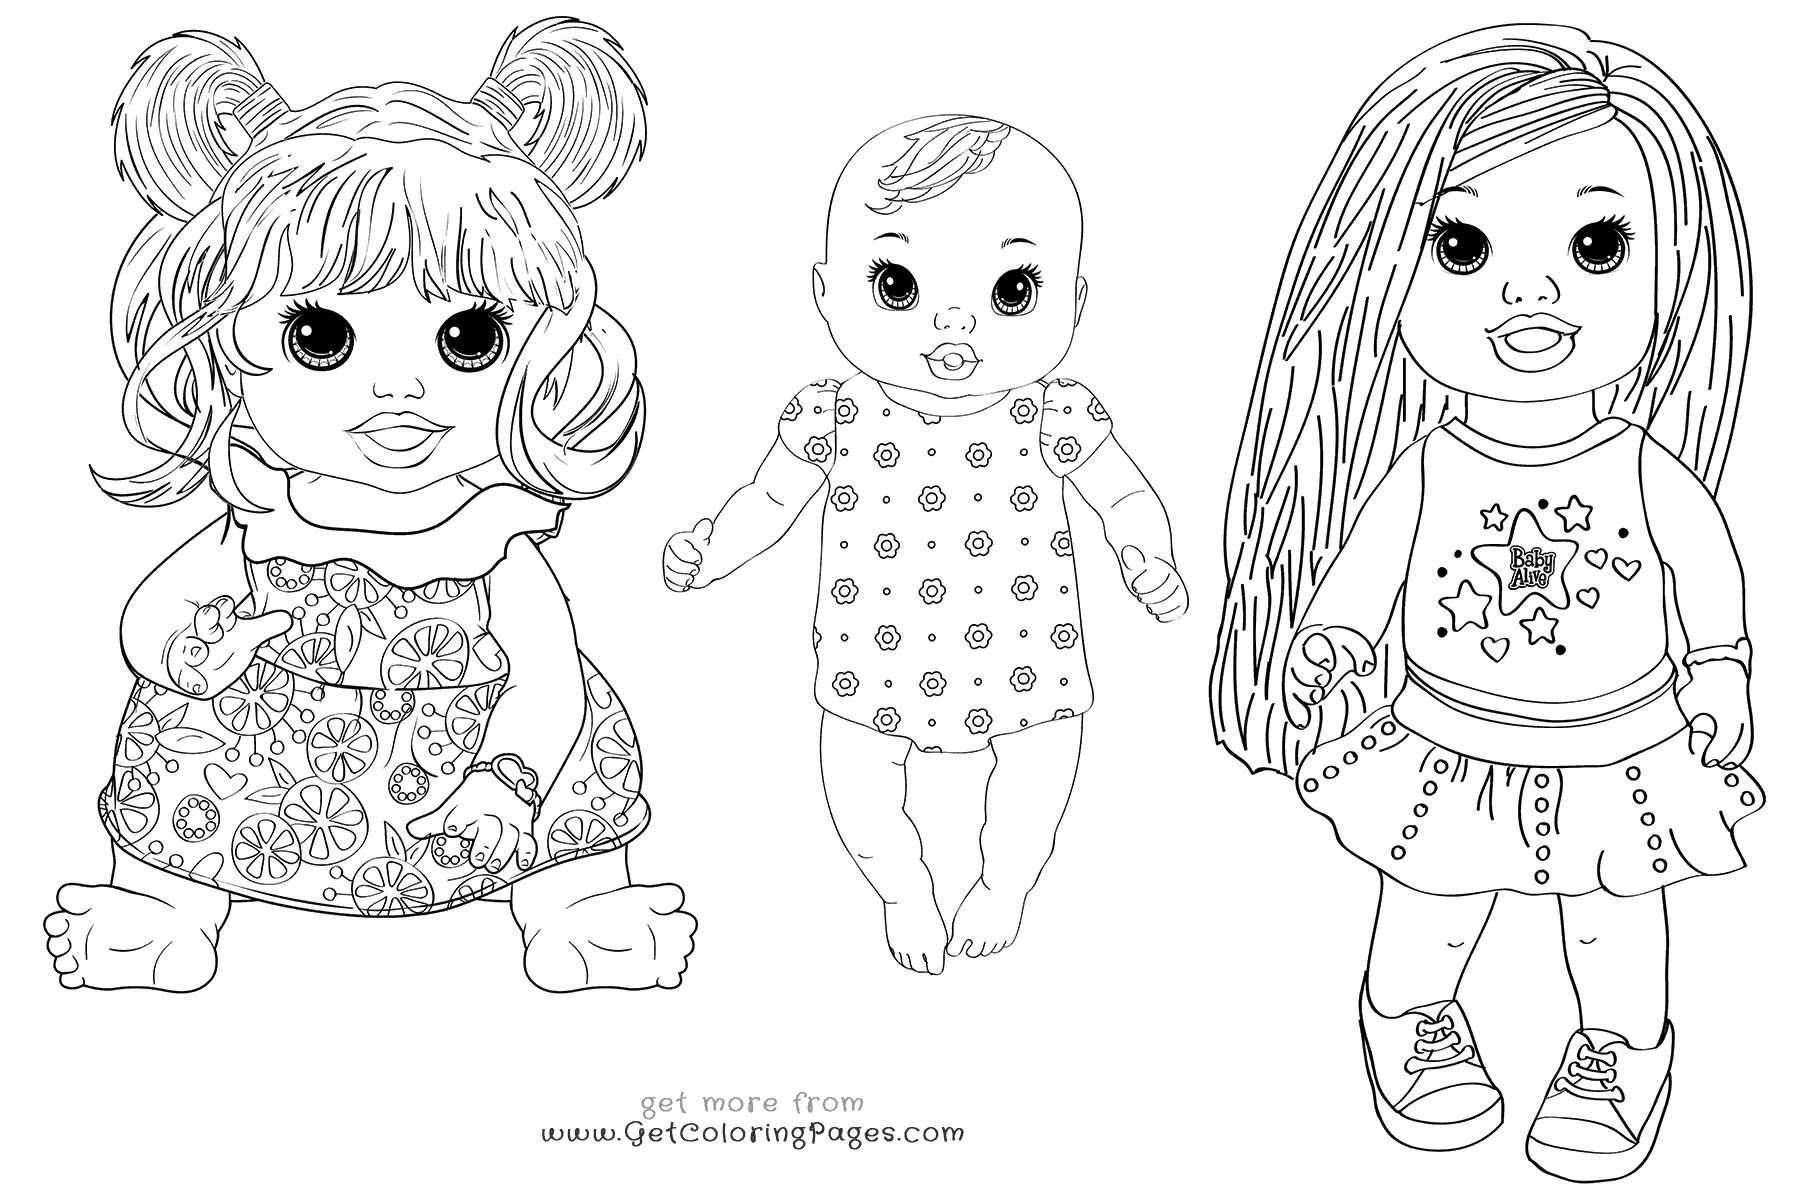 Разукрашенная кукла-раскраска для детей 5-6 лет